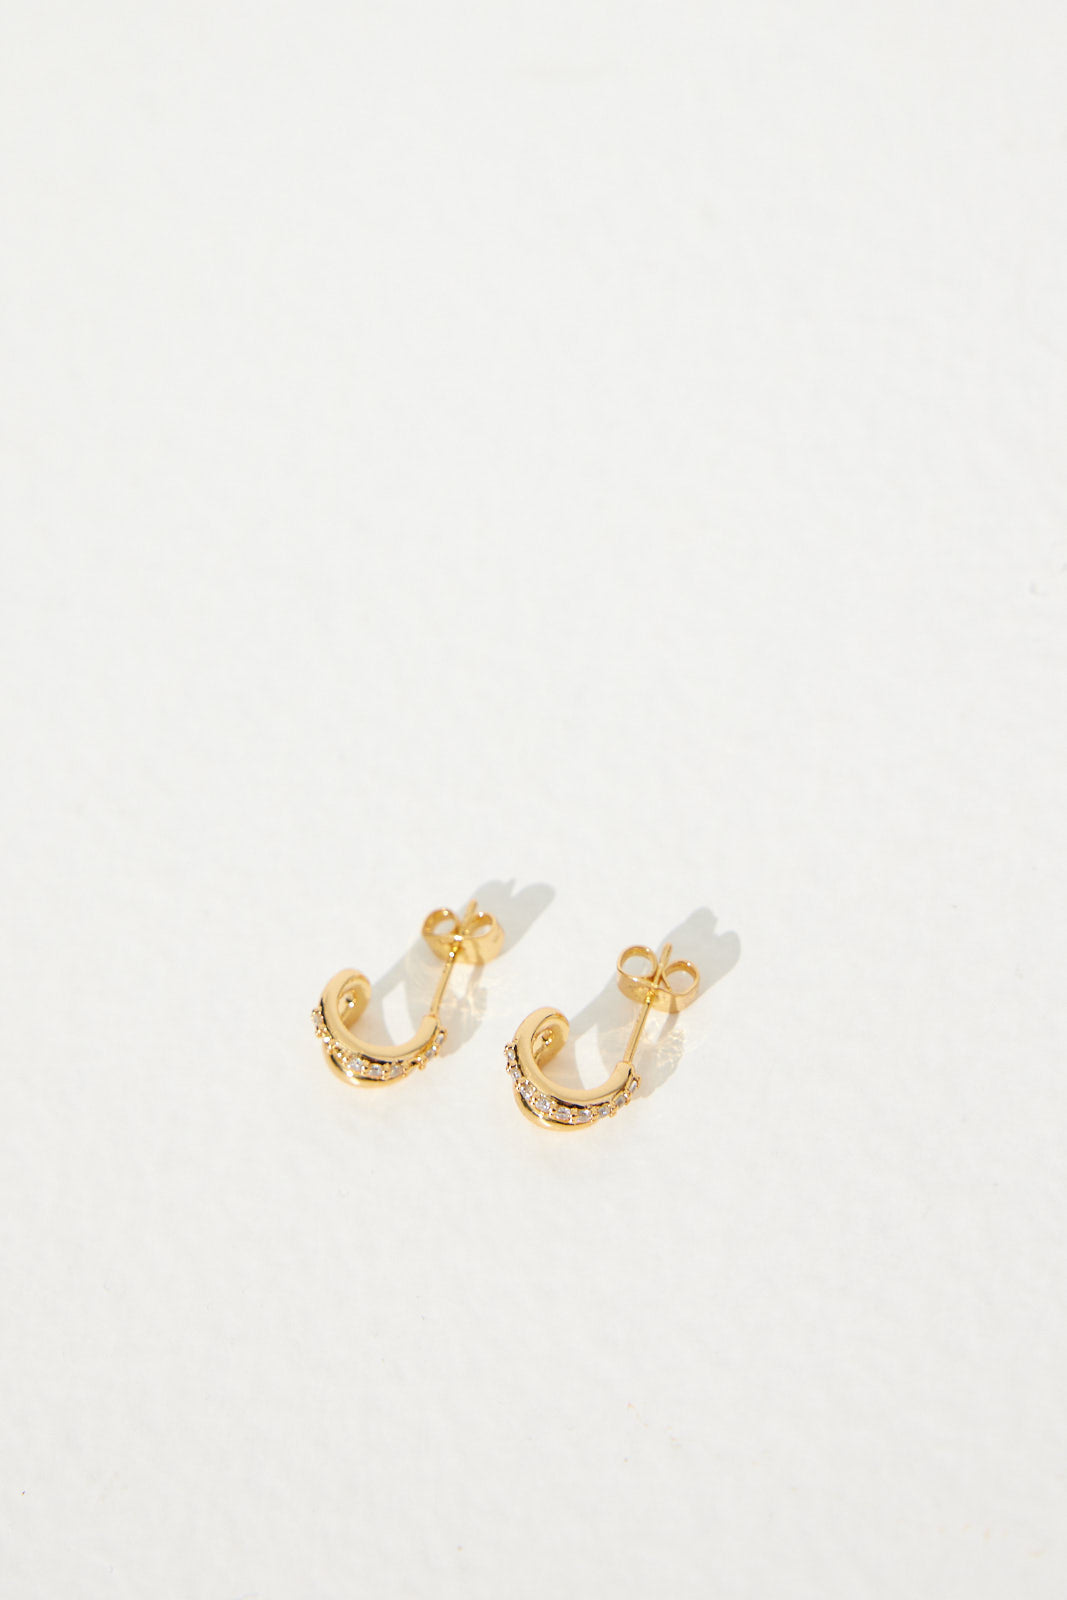 Petite Diamanté Earrings 18K Gold Plated